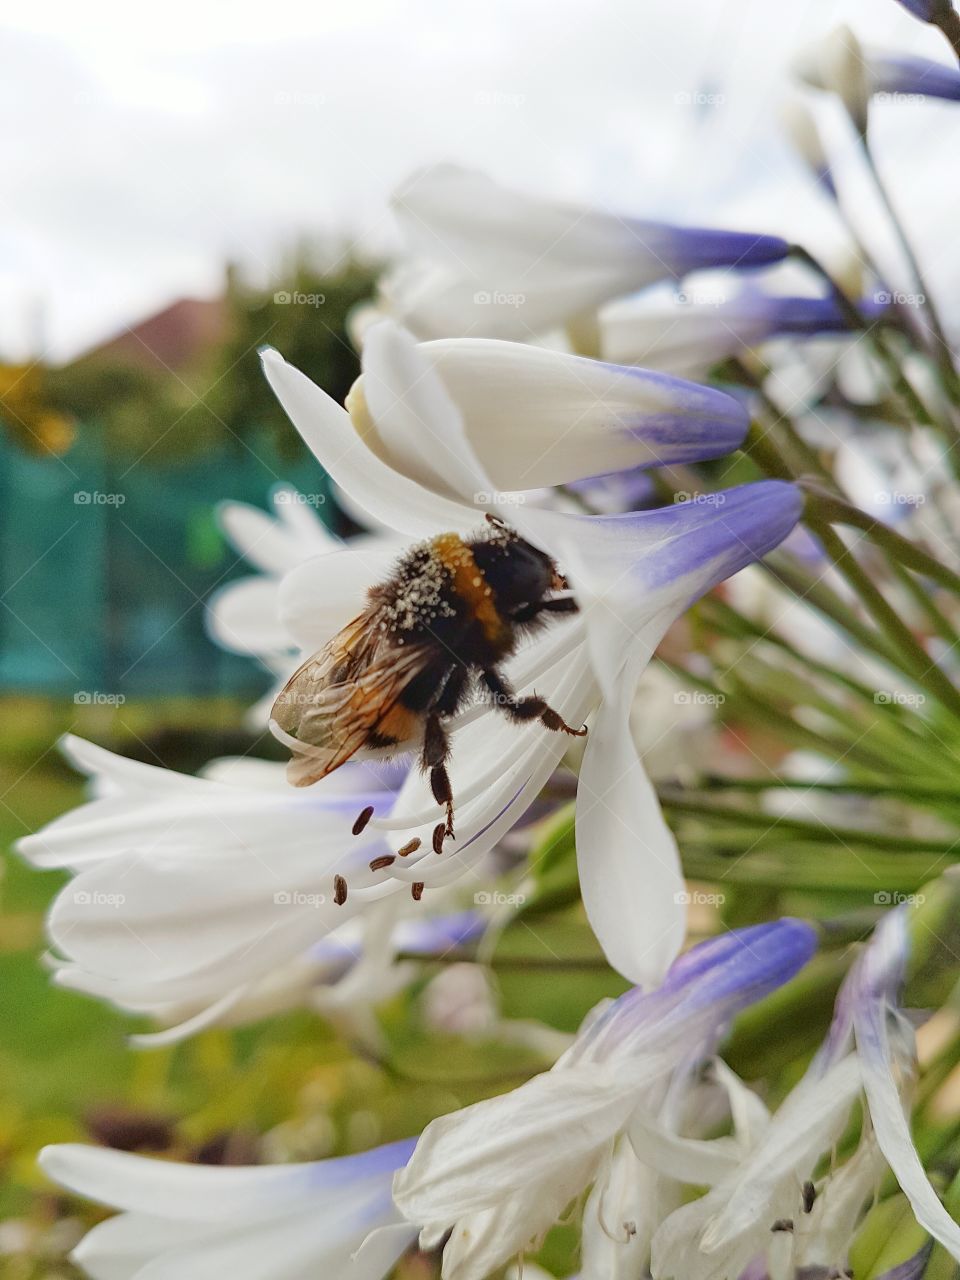 Honey bee on white flower